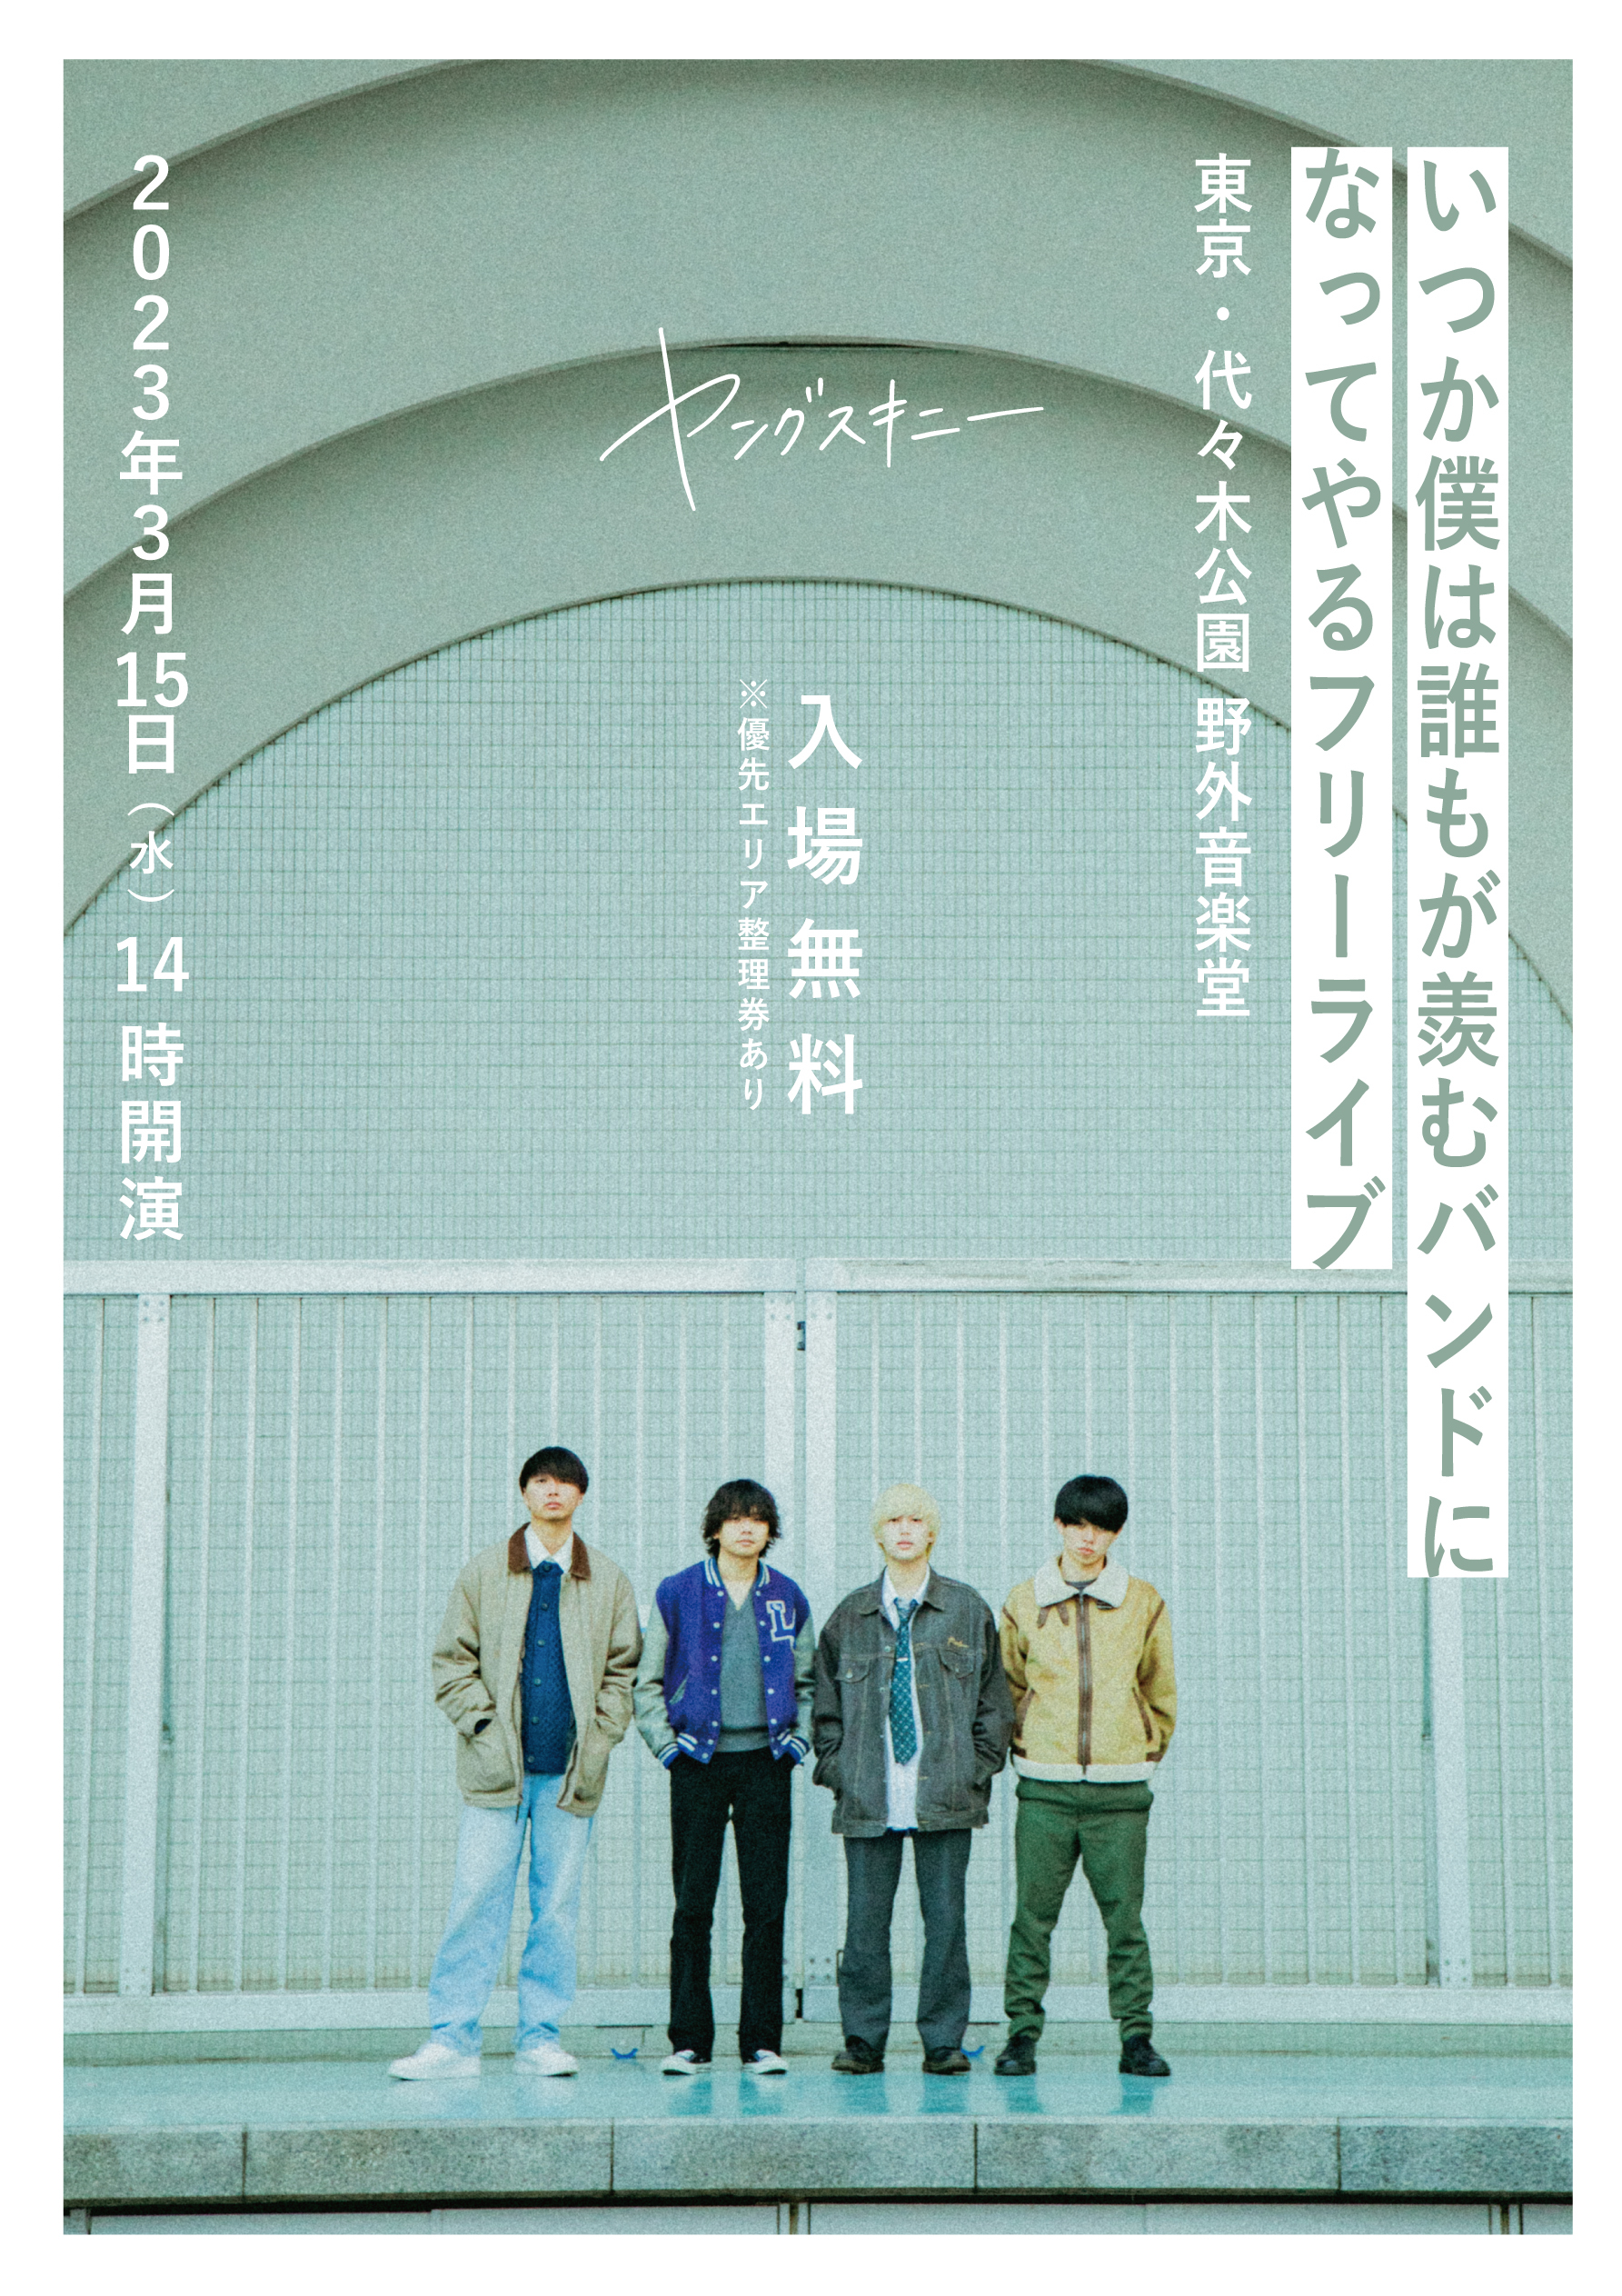 ヤングスキニー、メジャーデビューシングル「らしく」を2月に配信